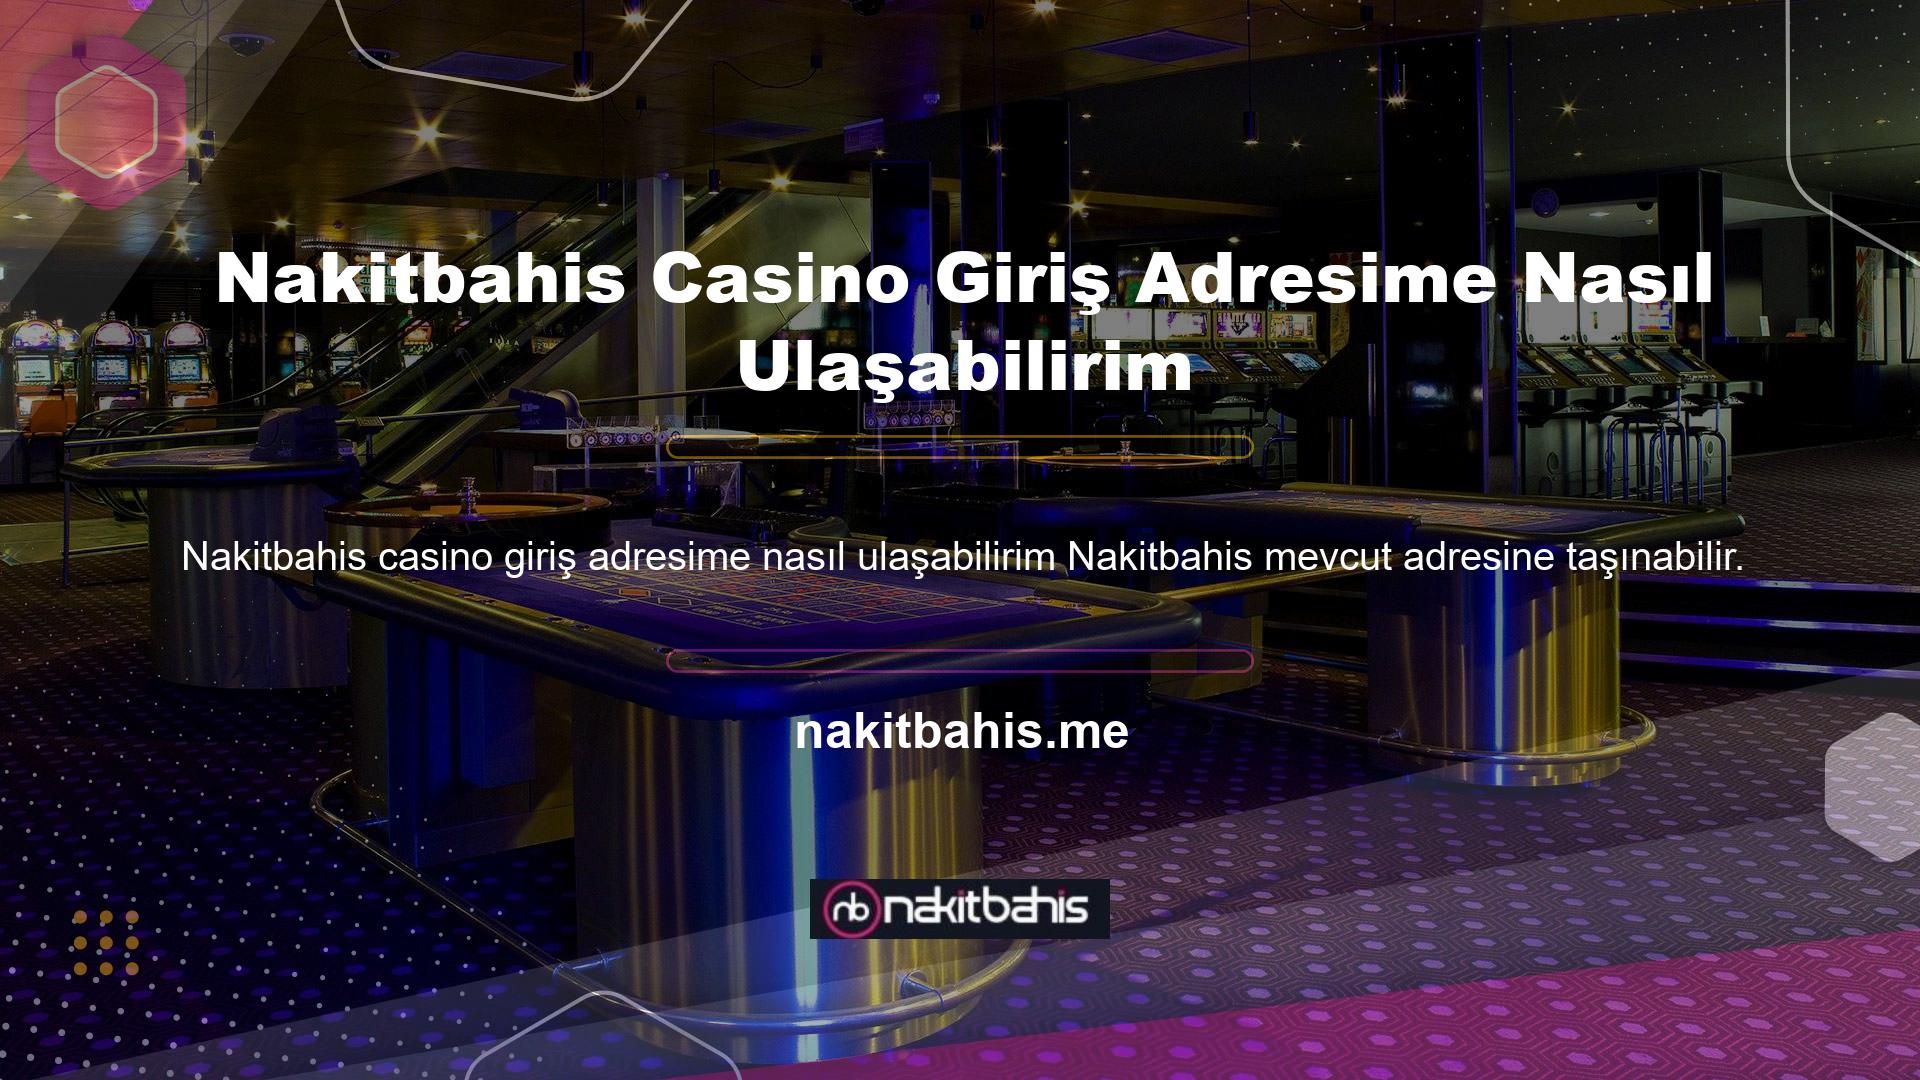 Yani casino severlerin her zaman Nakitbahis giriş adreslerine erişimleri olduğu söylenebilir